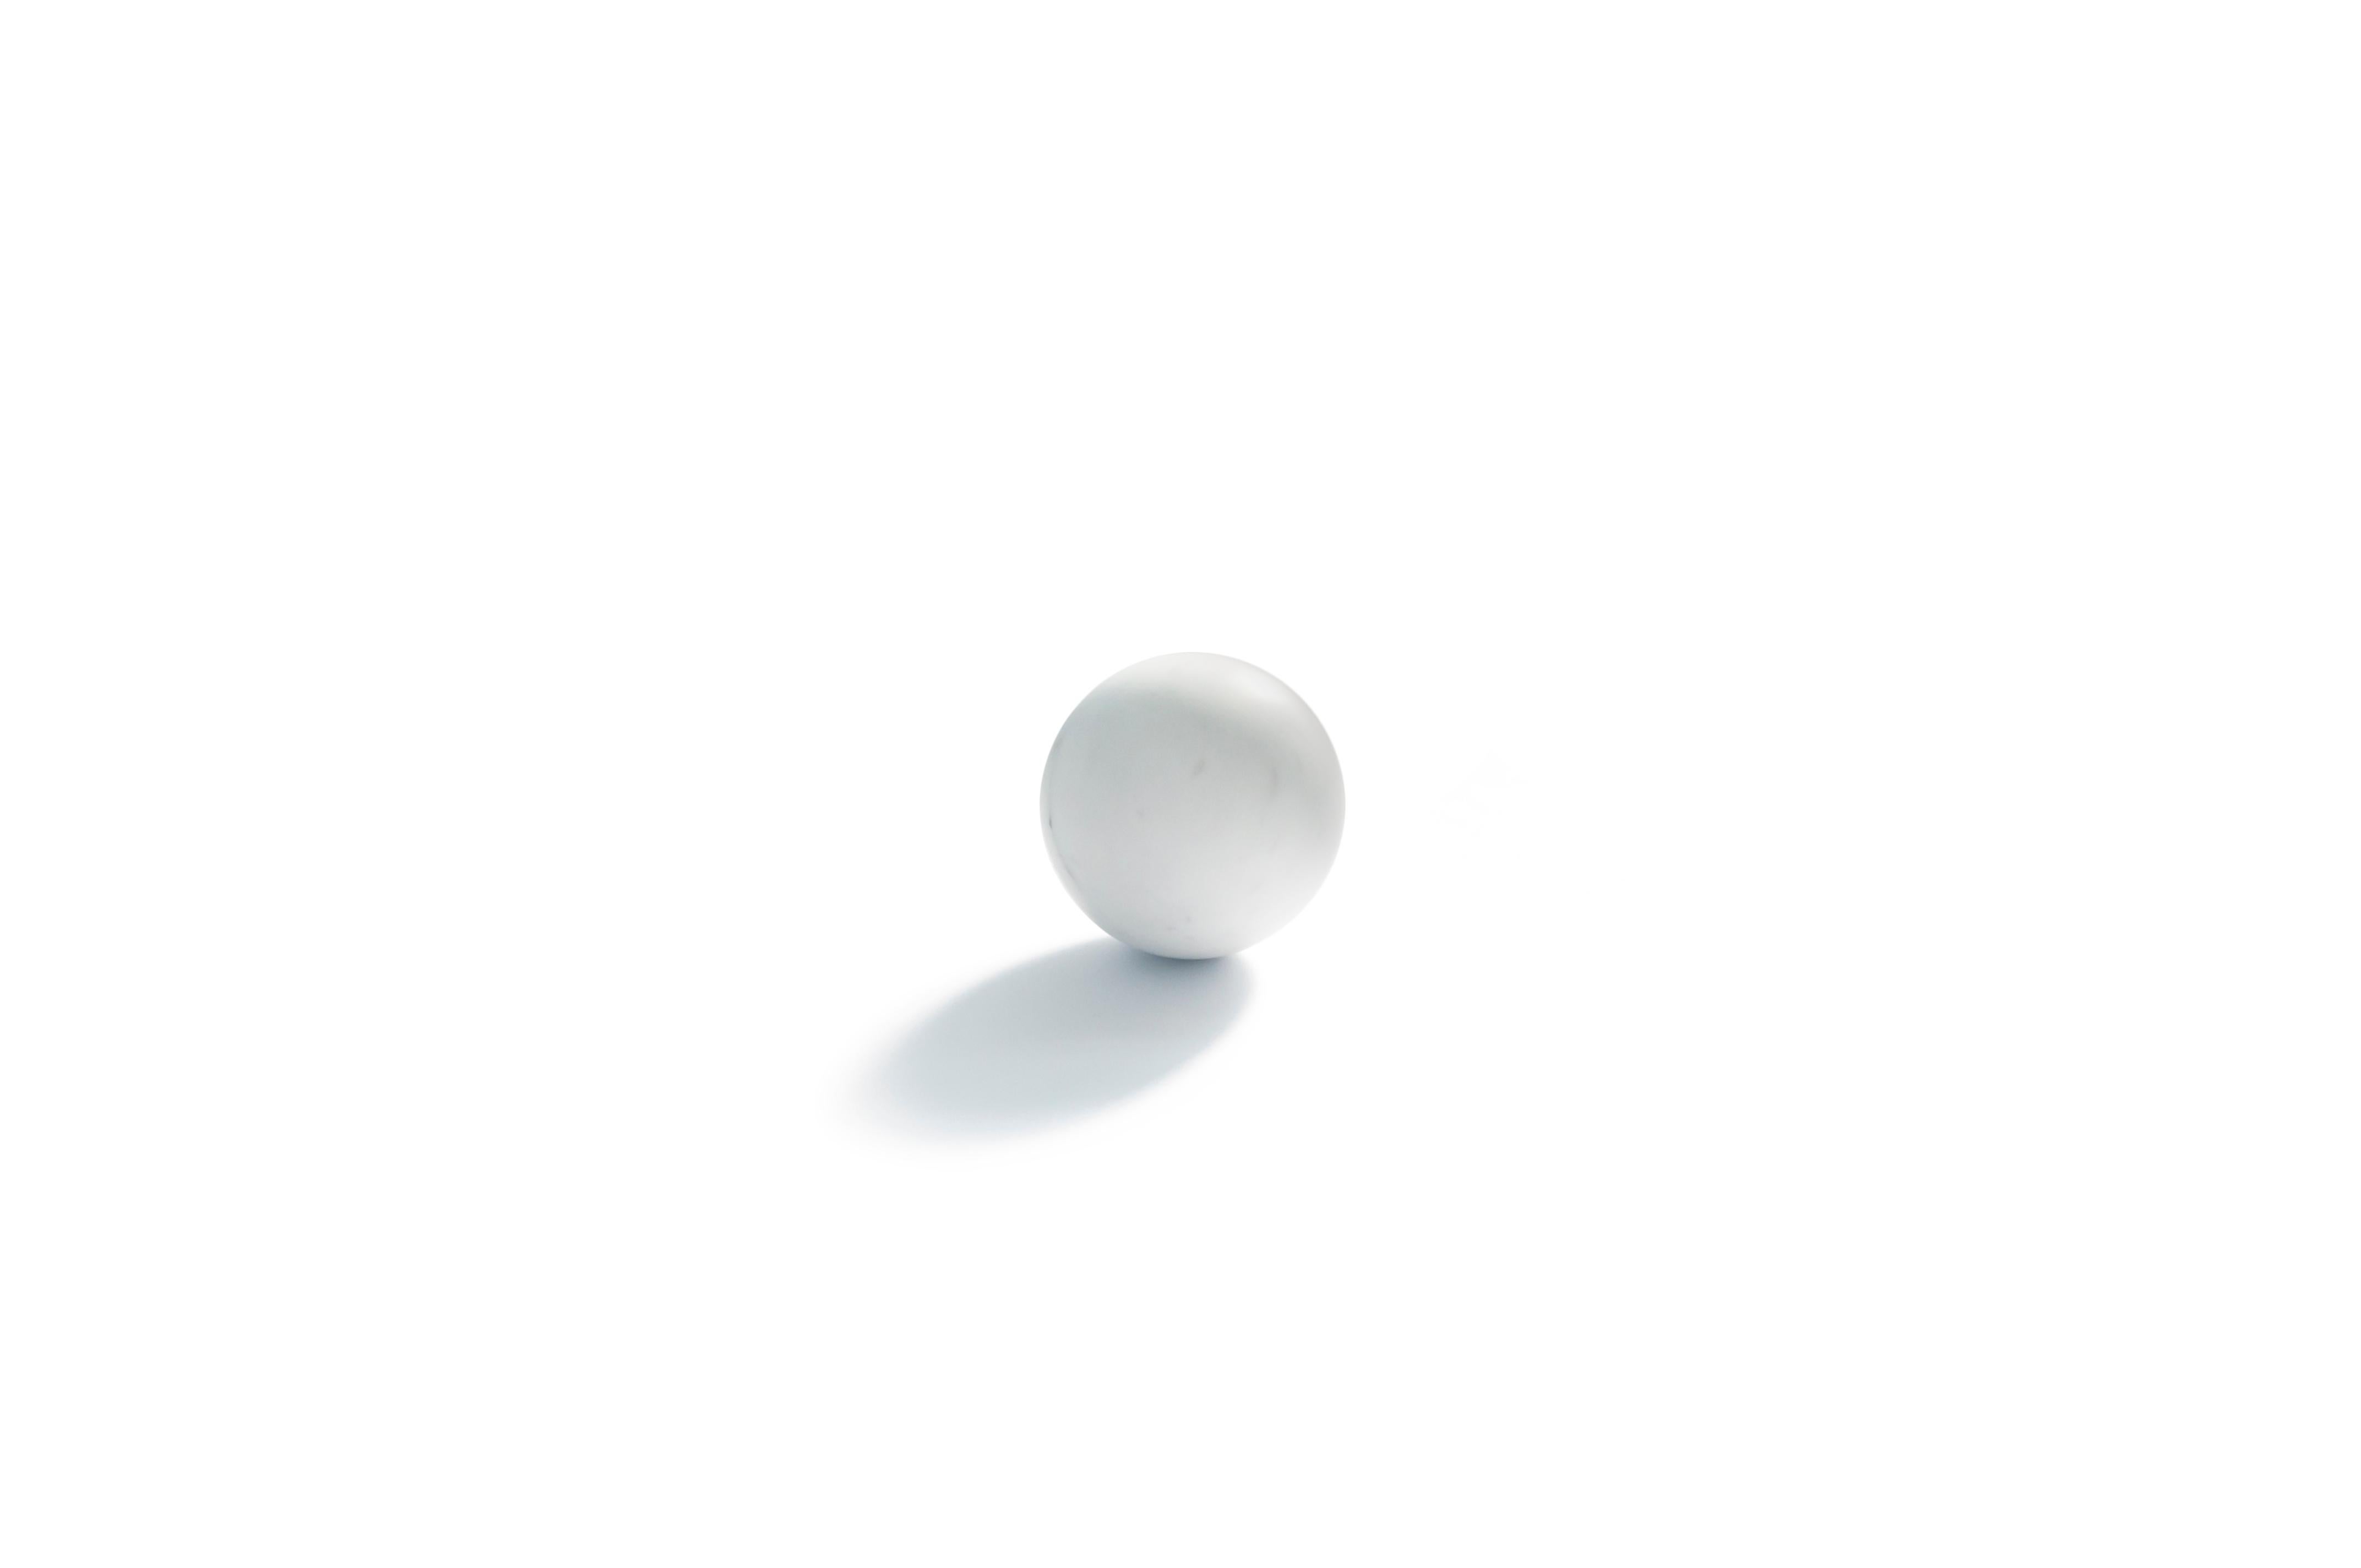 Presse-papiers en forme de sphère en marbre de Carrare blanc satiné. Mesure : Diamètre 10,5 cm

Chaque pièce est en quelque sorte unique (puisque chaque bloc de marbre est différent par ses veines et ses nuances) et fabriquée à la main en Italie.